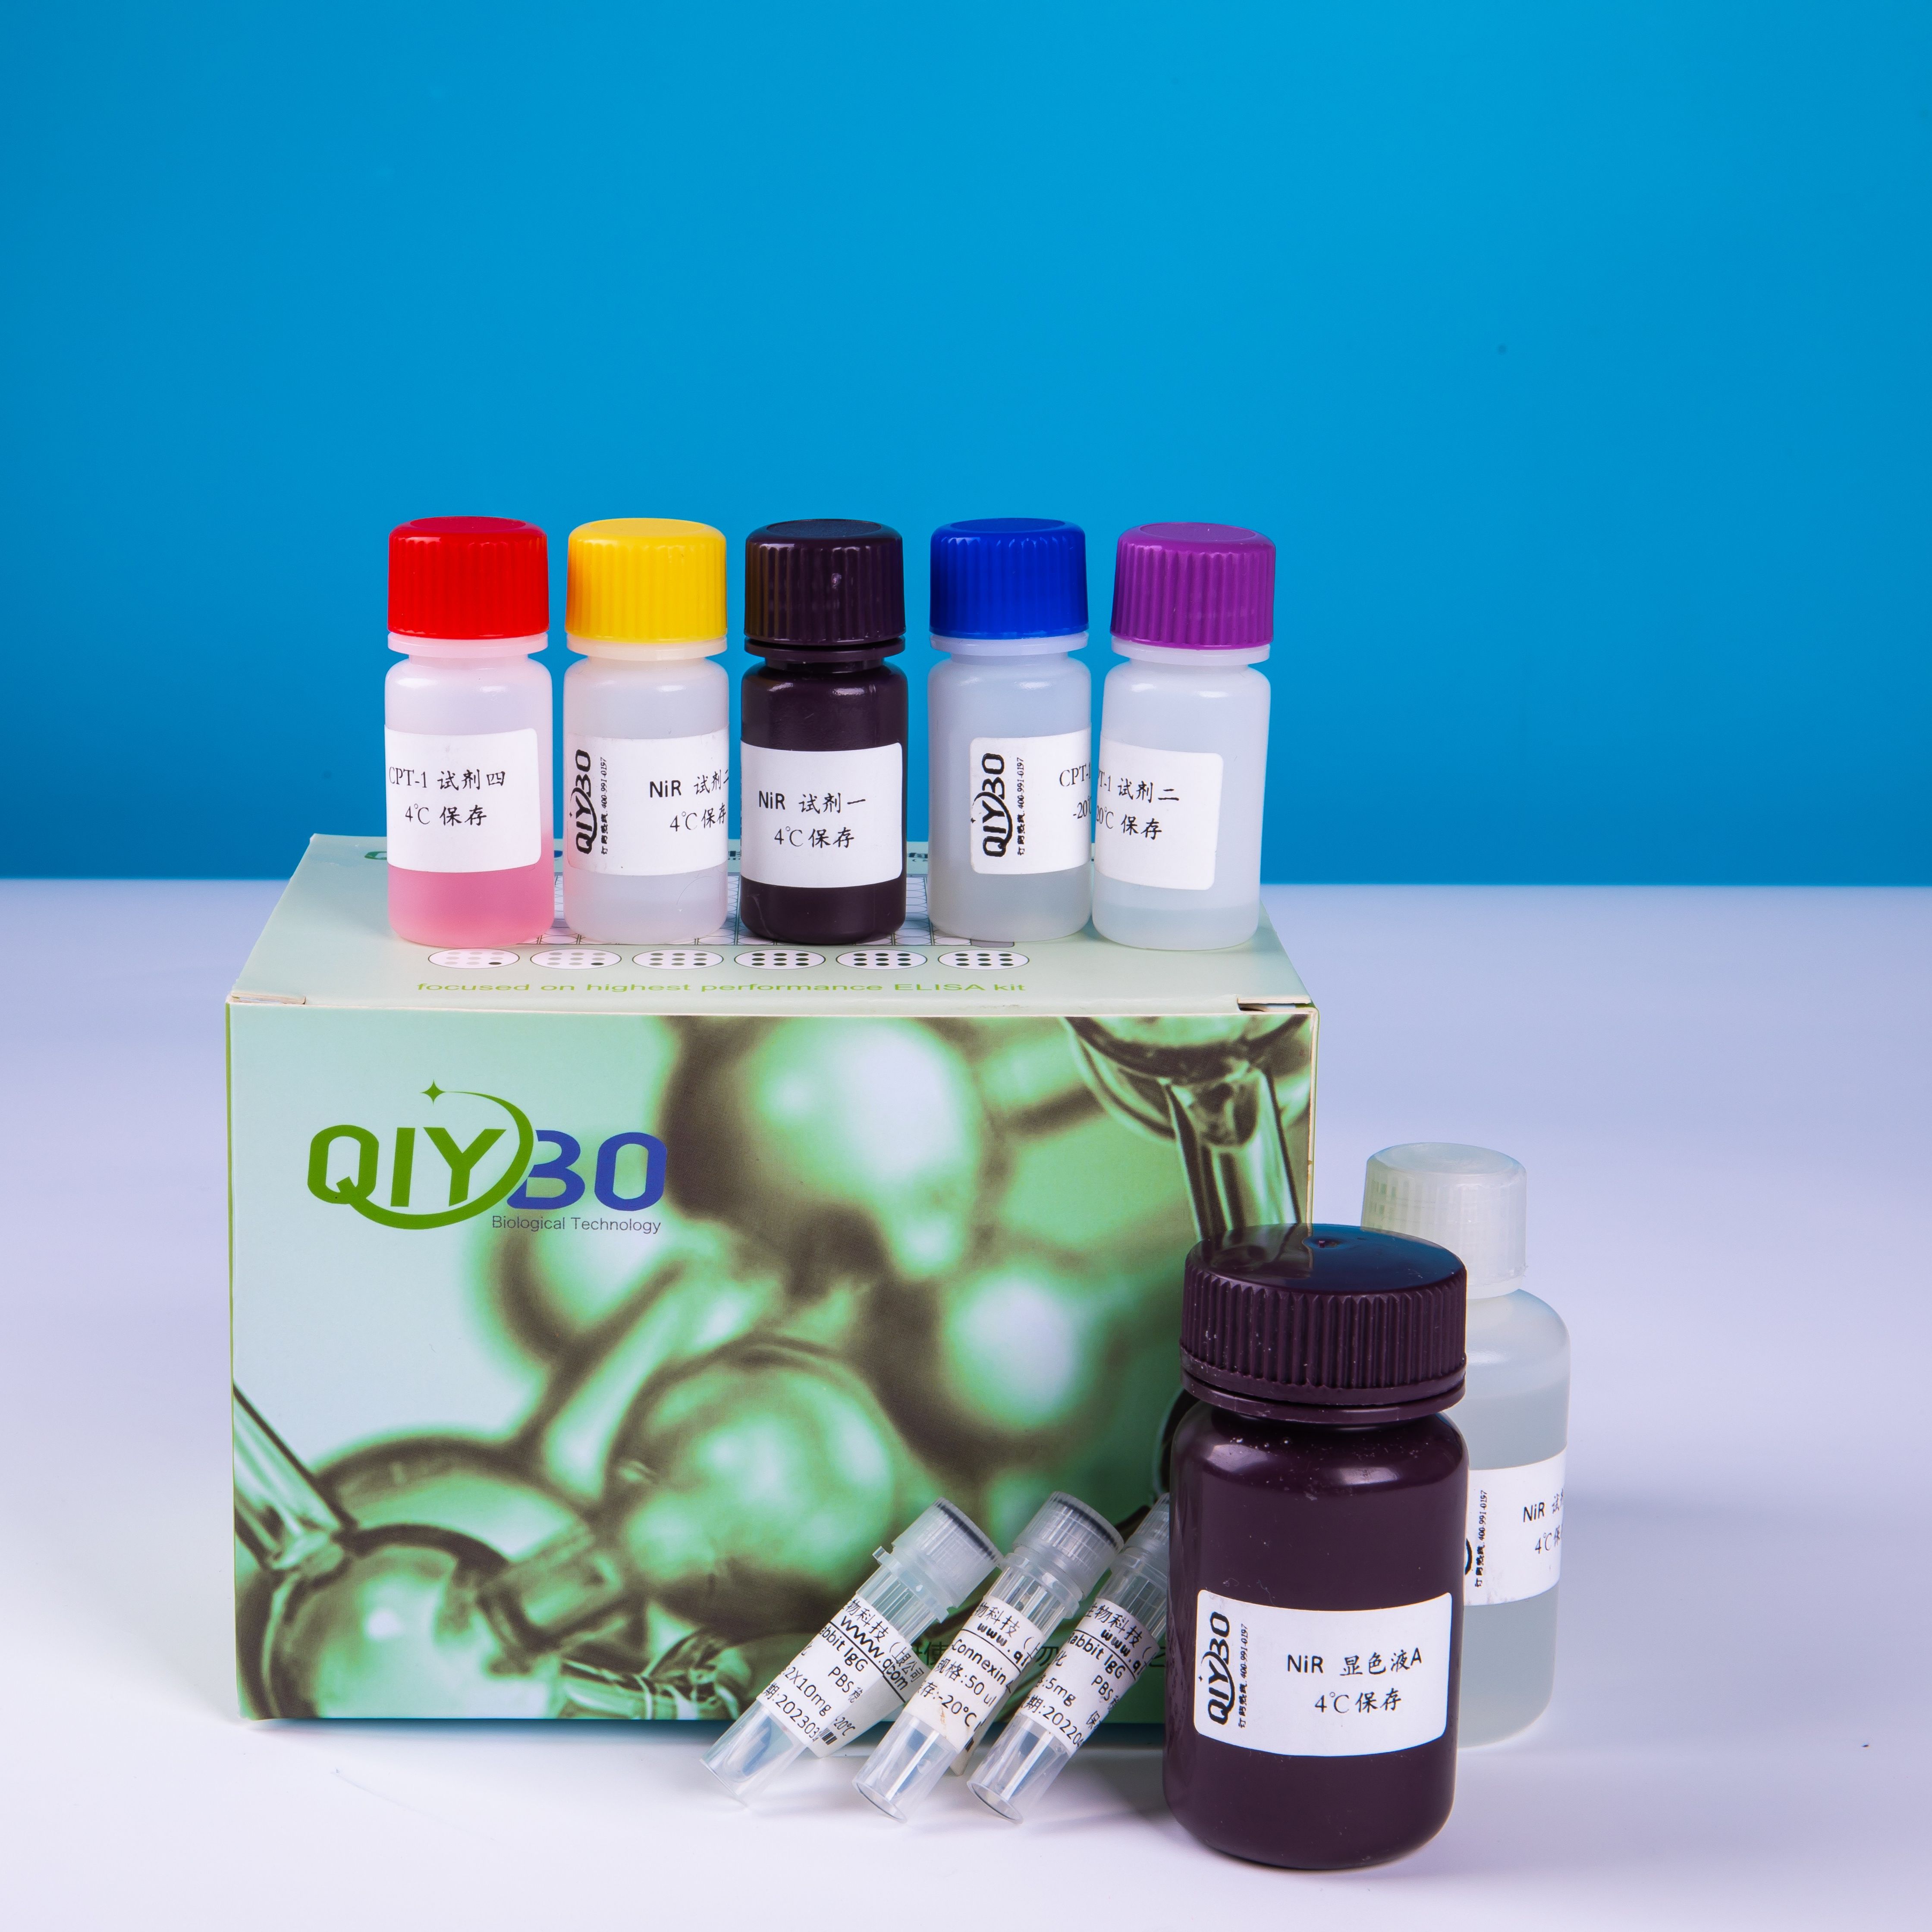 肉桂酸-4-羟基化酶(C4H)检测试剂盒